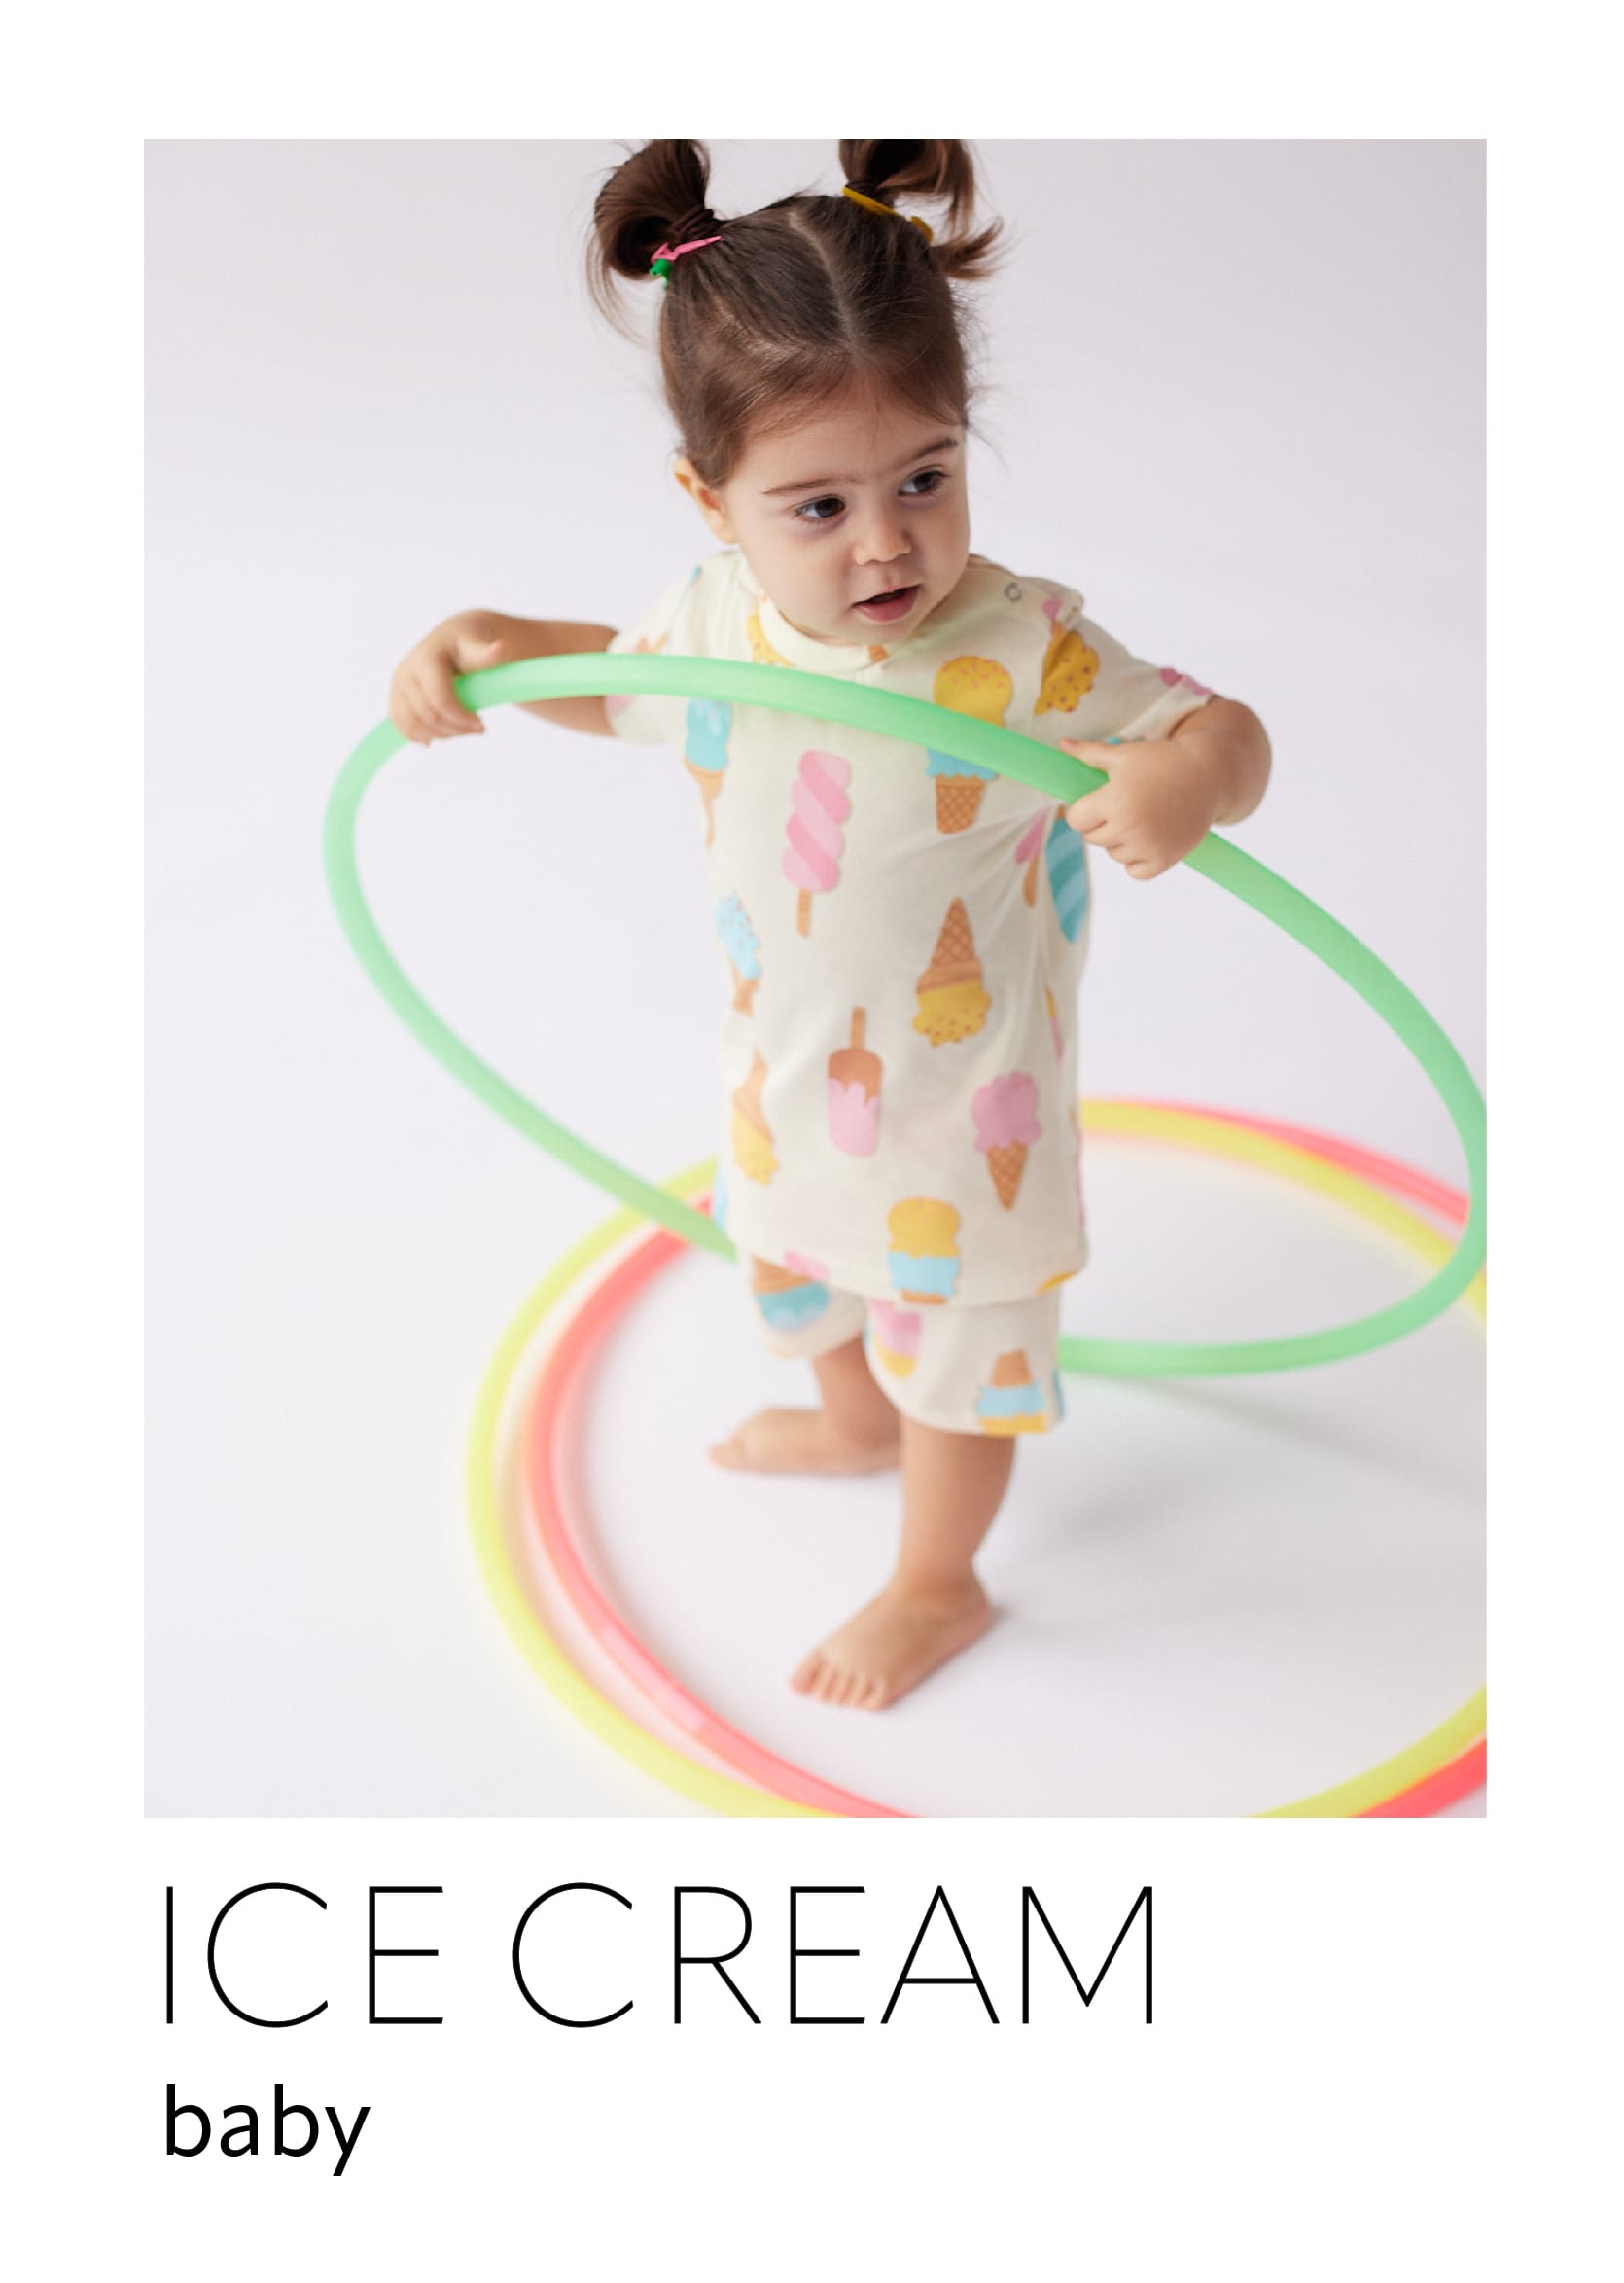 Devojčica beba stoji u beloj pidžami sa motivima sladoleda i deži zeleni obruč